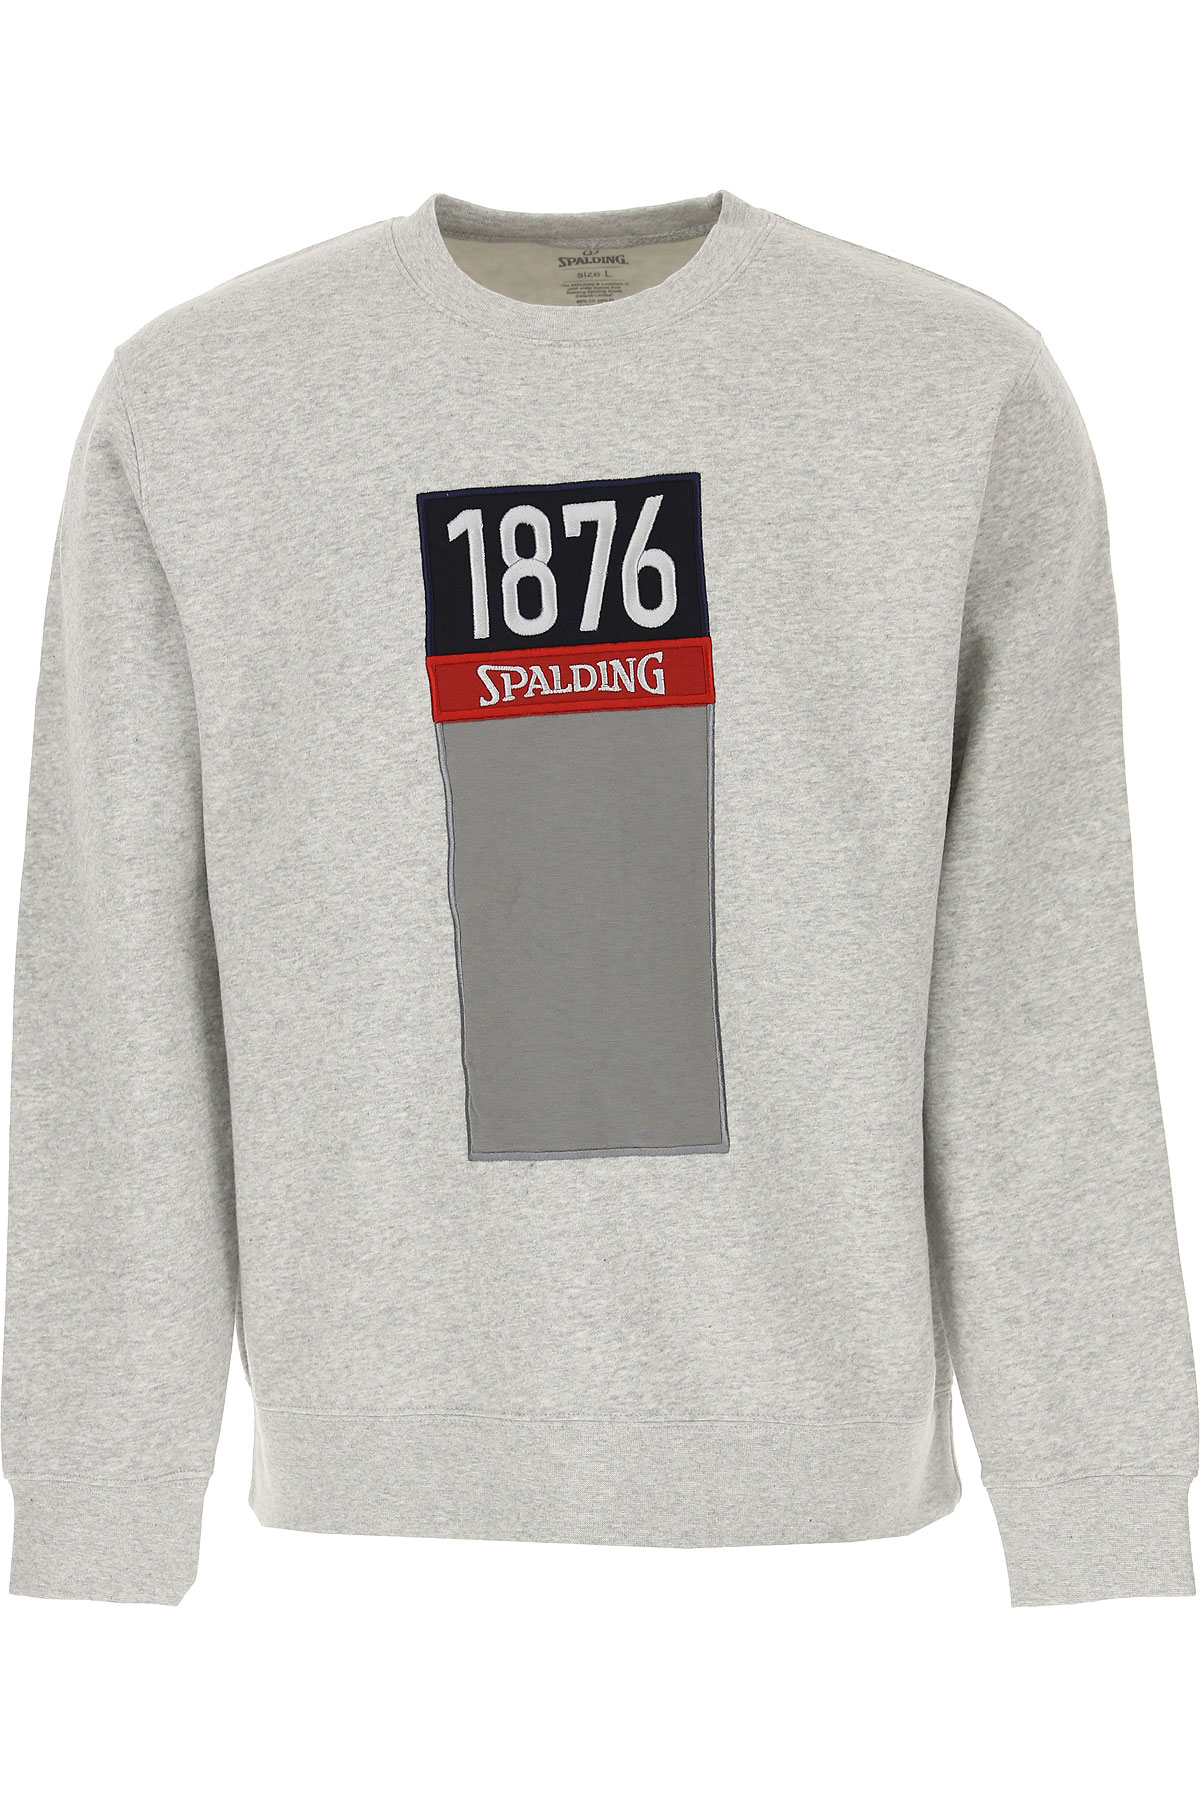 Spalding Sweatshirt für Herren, Kapuzenpulli, Hoodie, Sweats Günstig im Sale, Grau Melange, Baumwolle, 2017, L M XL XXL